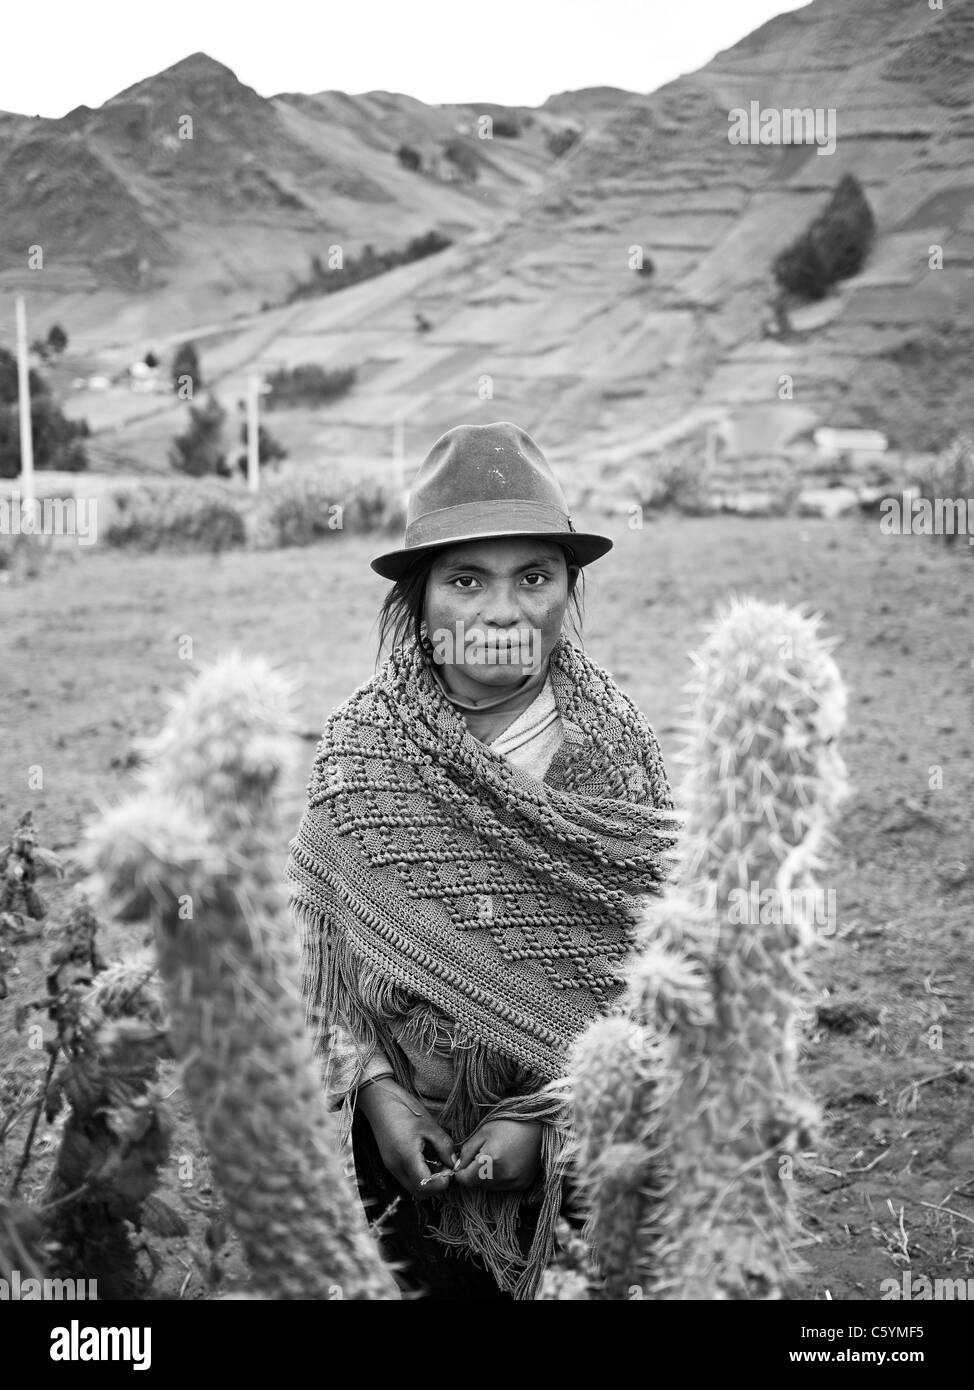 12 años de edad, trabajador de campo de América del Sur en la Cordillera de Los Andes de Ecuador. Foto de stock